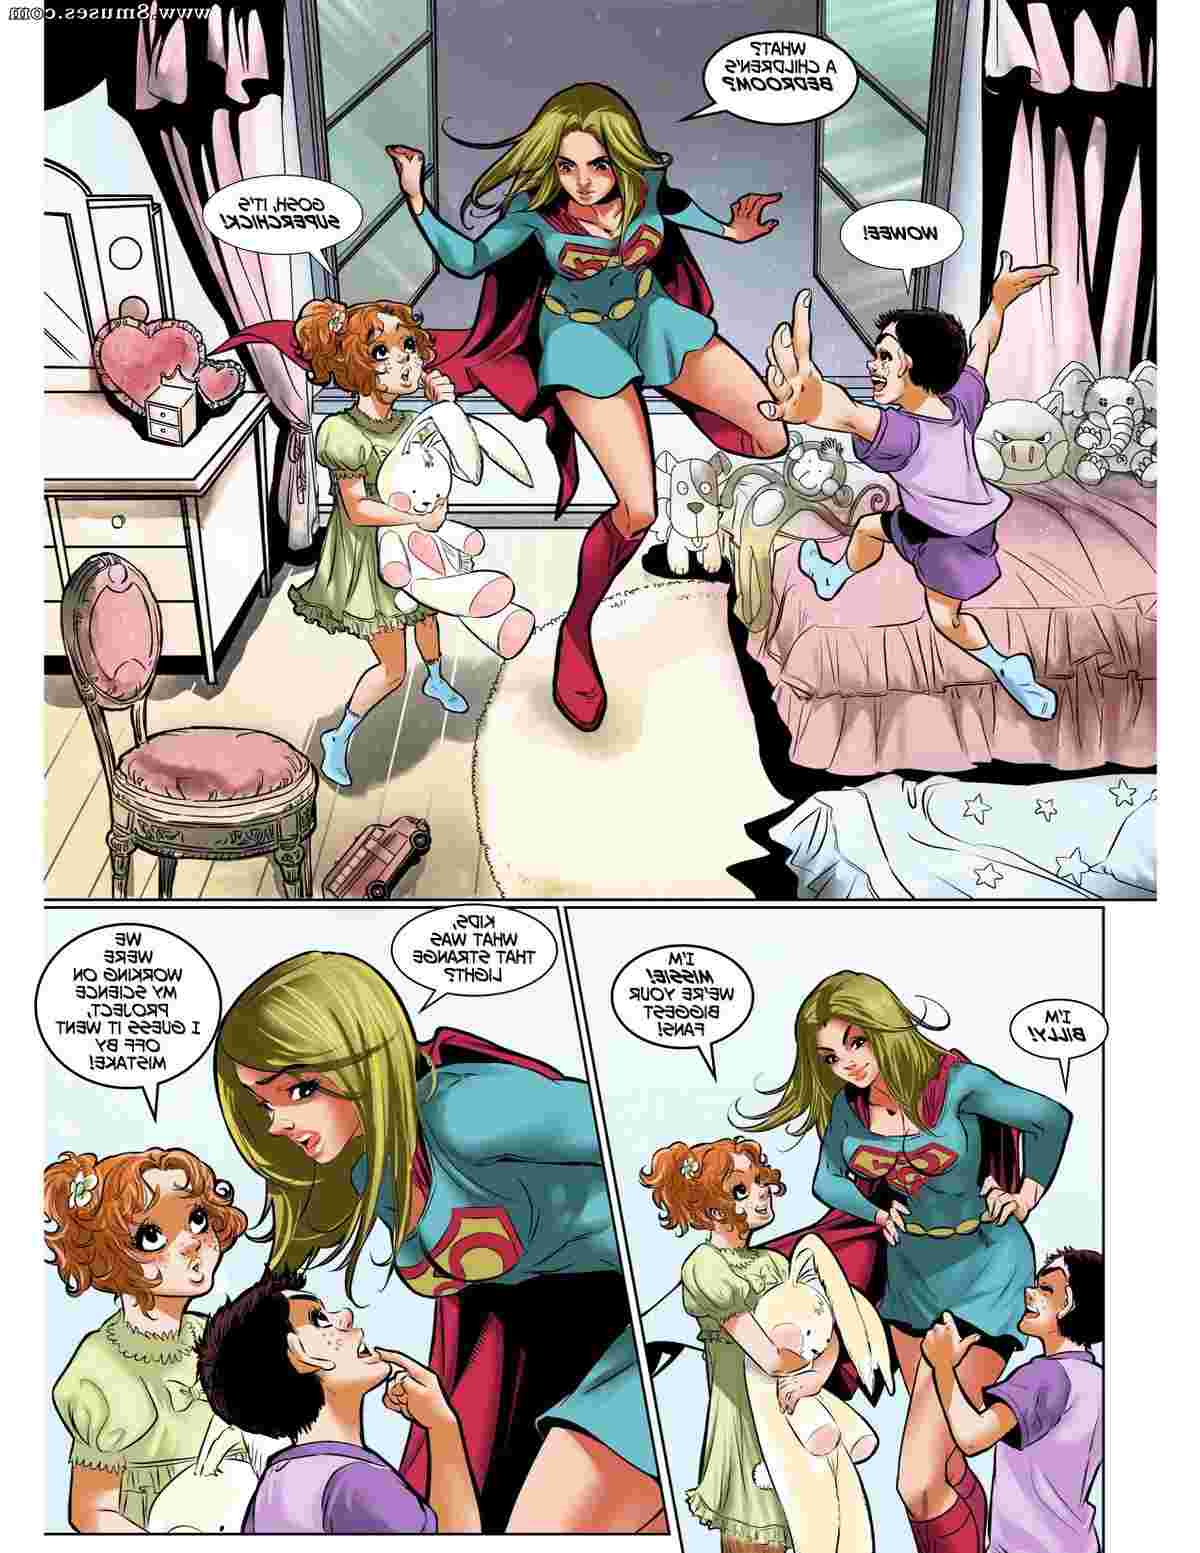 DreamTales-Comics/Superchicks-Biggest-Fans Superchicks_Biggest_Fans__8muses_-_Sex_and_Porn_Comics_3.jpg